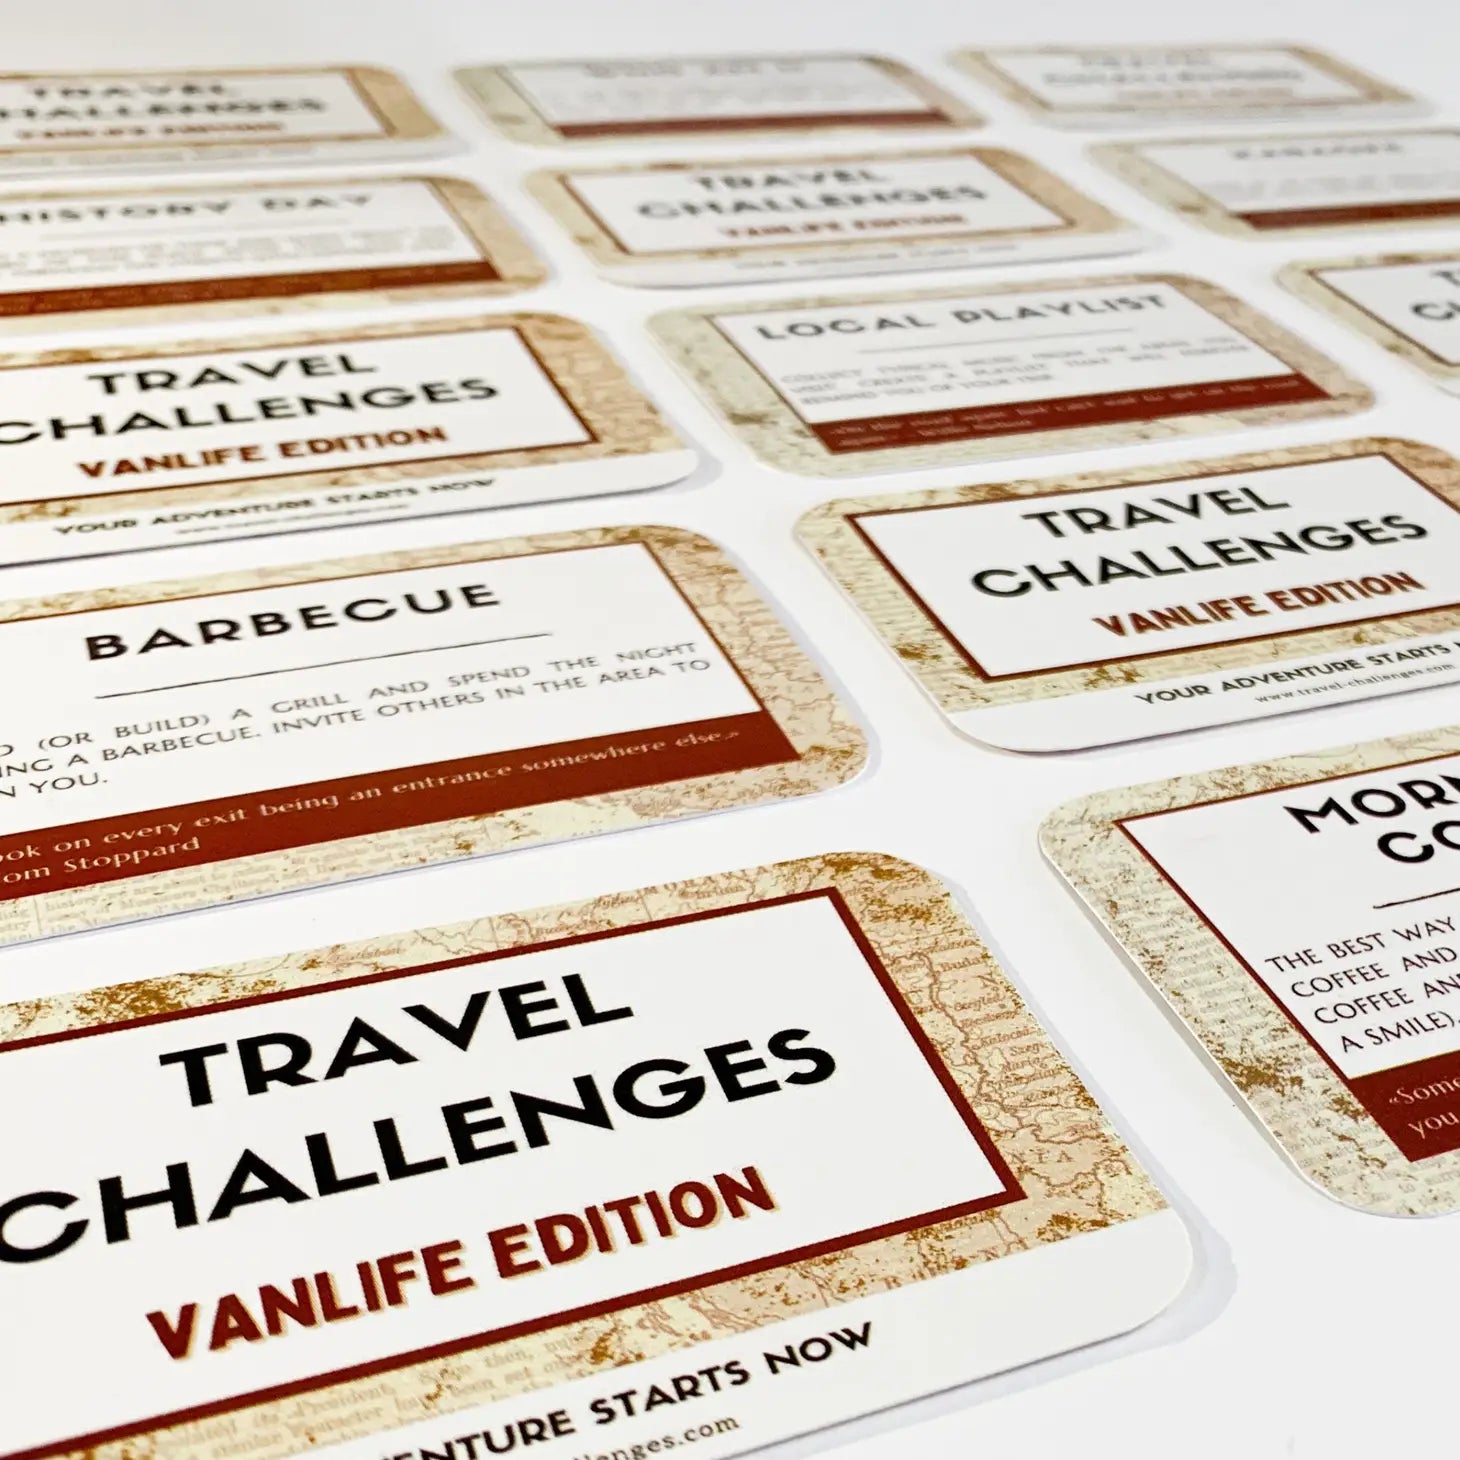 Juego de cartas, Travel Challenges Vanlife Edition